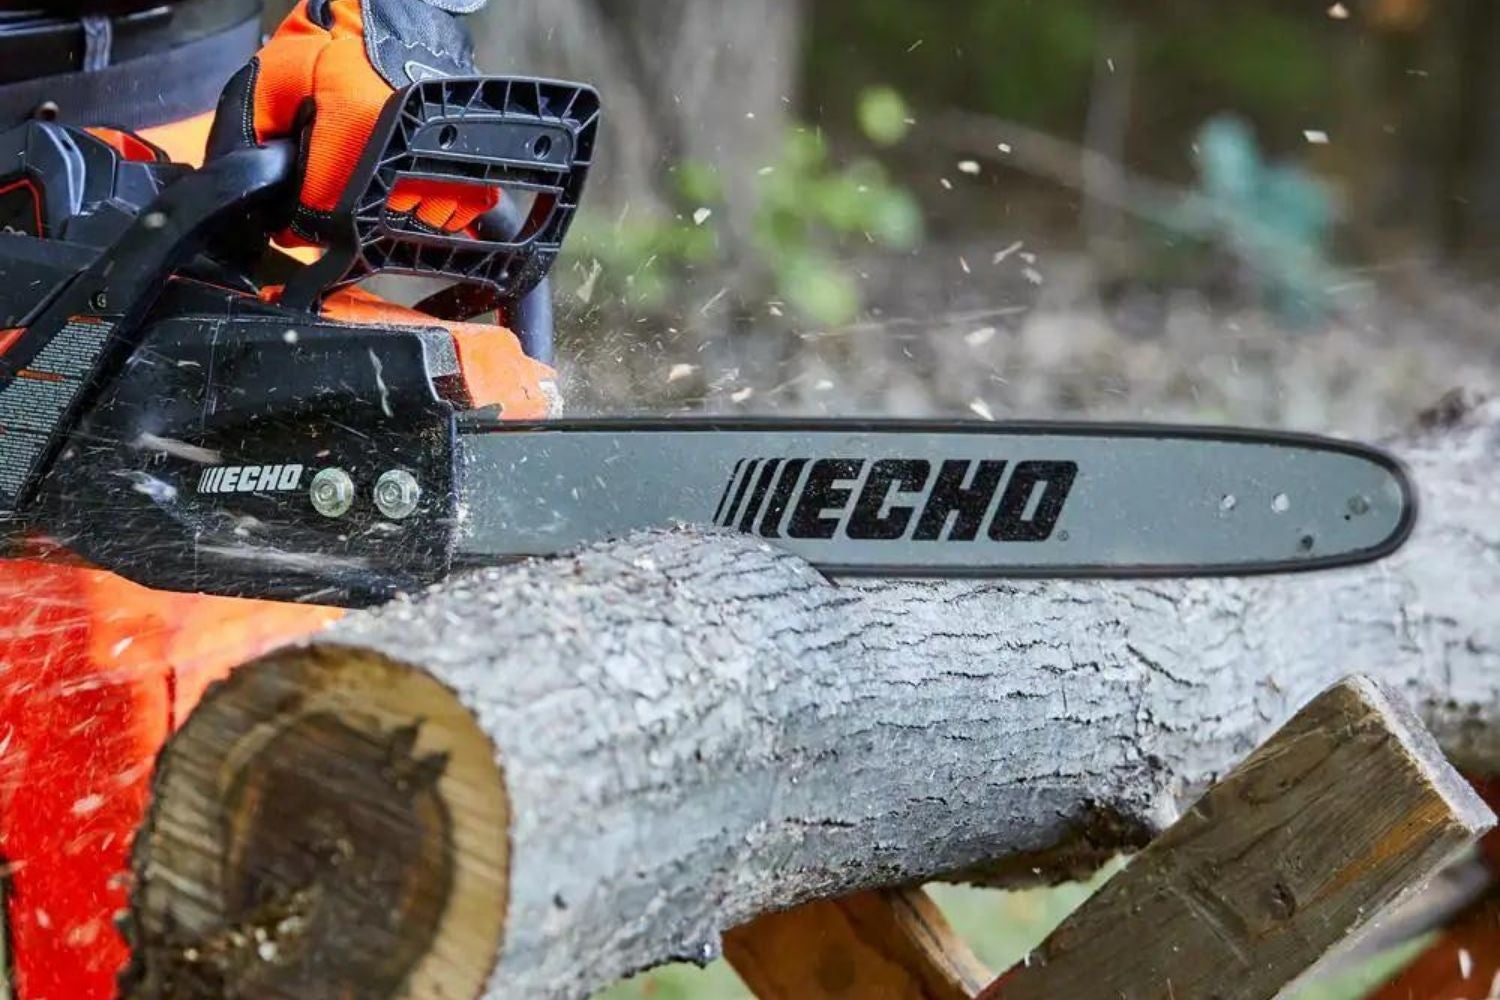 Best echo chainsaw